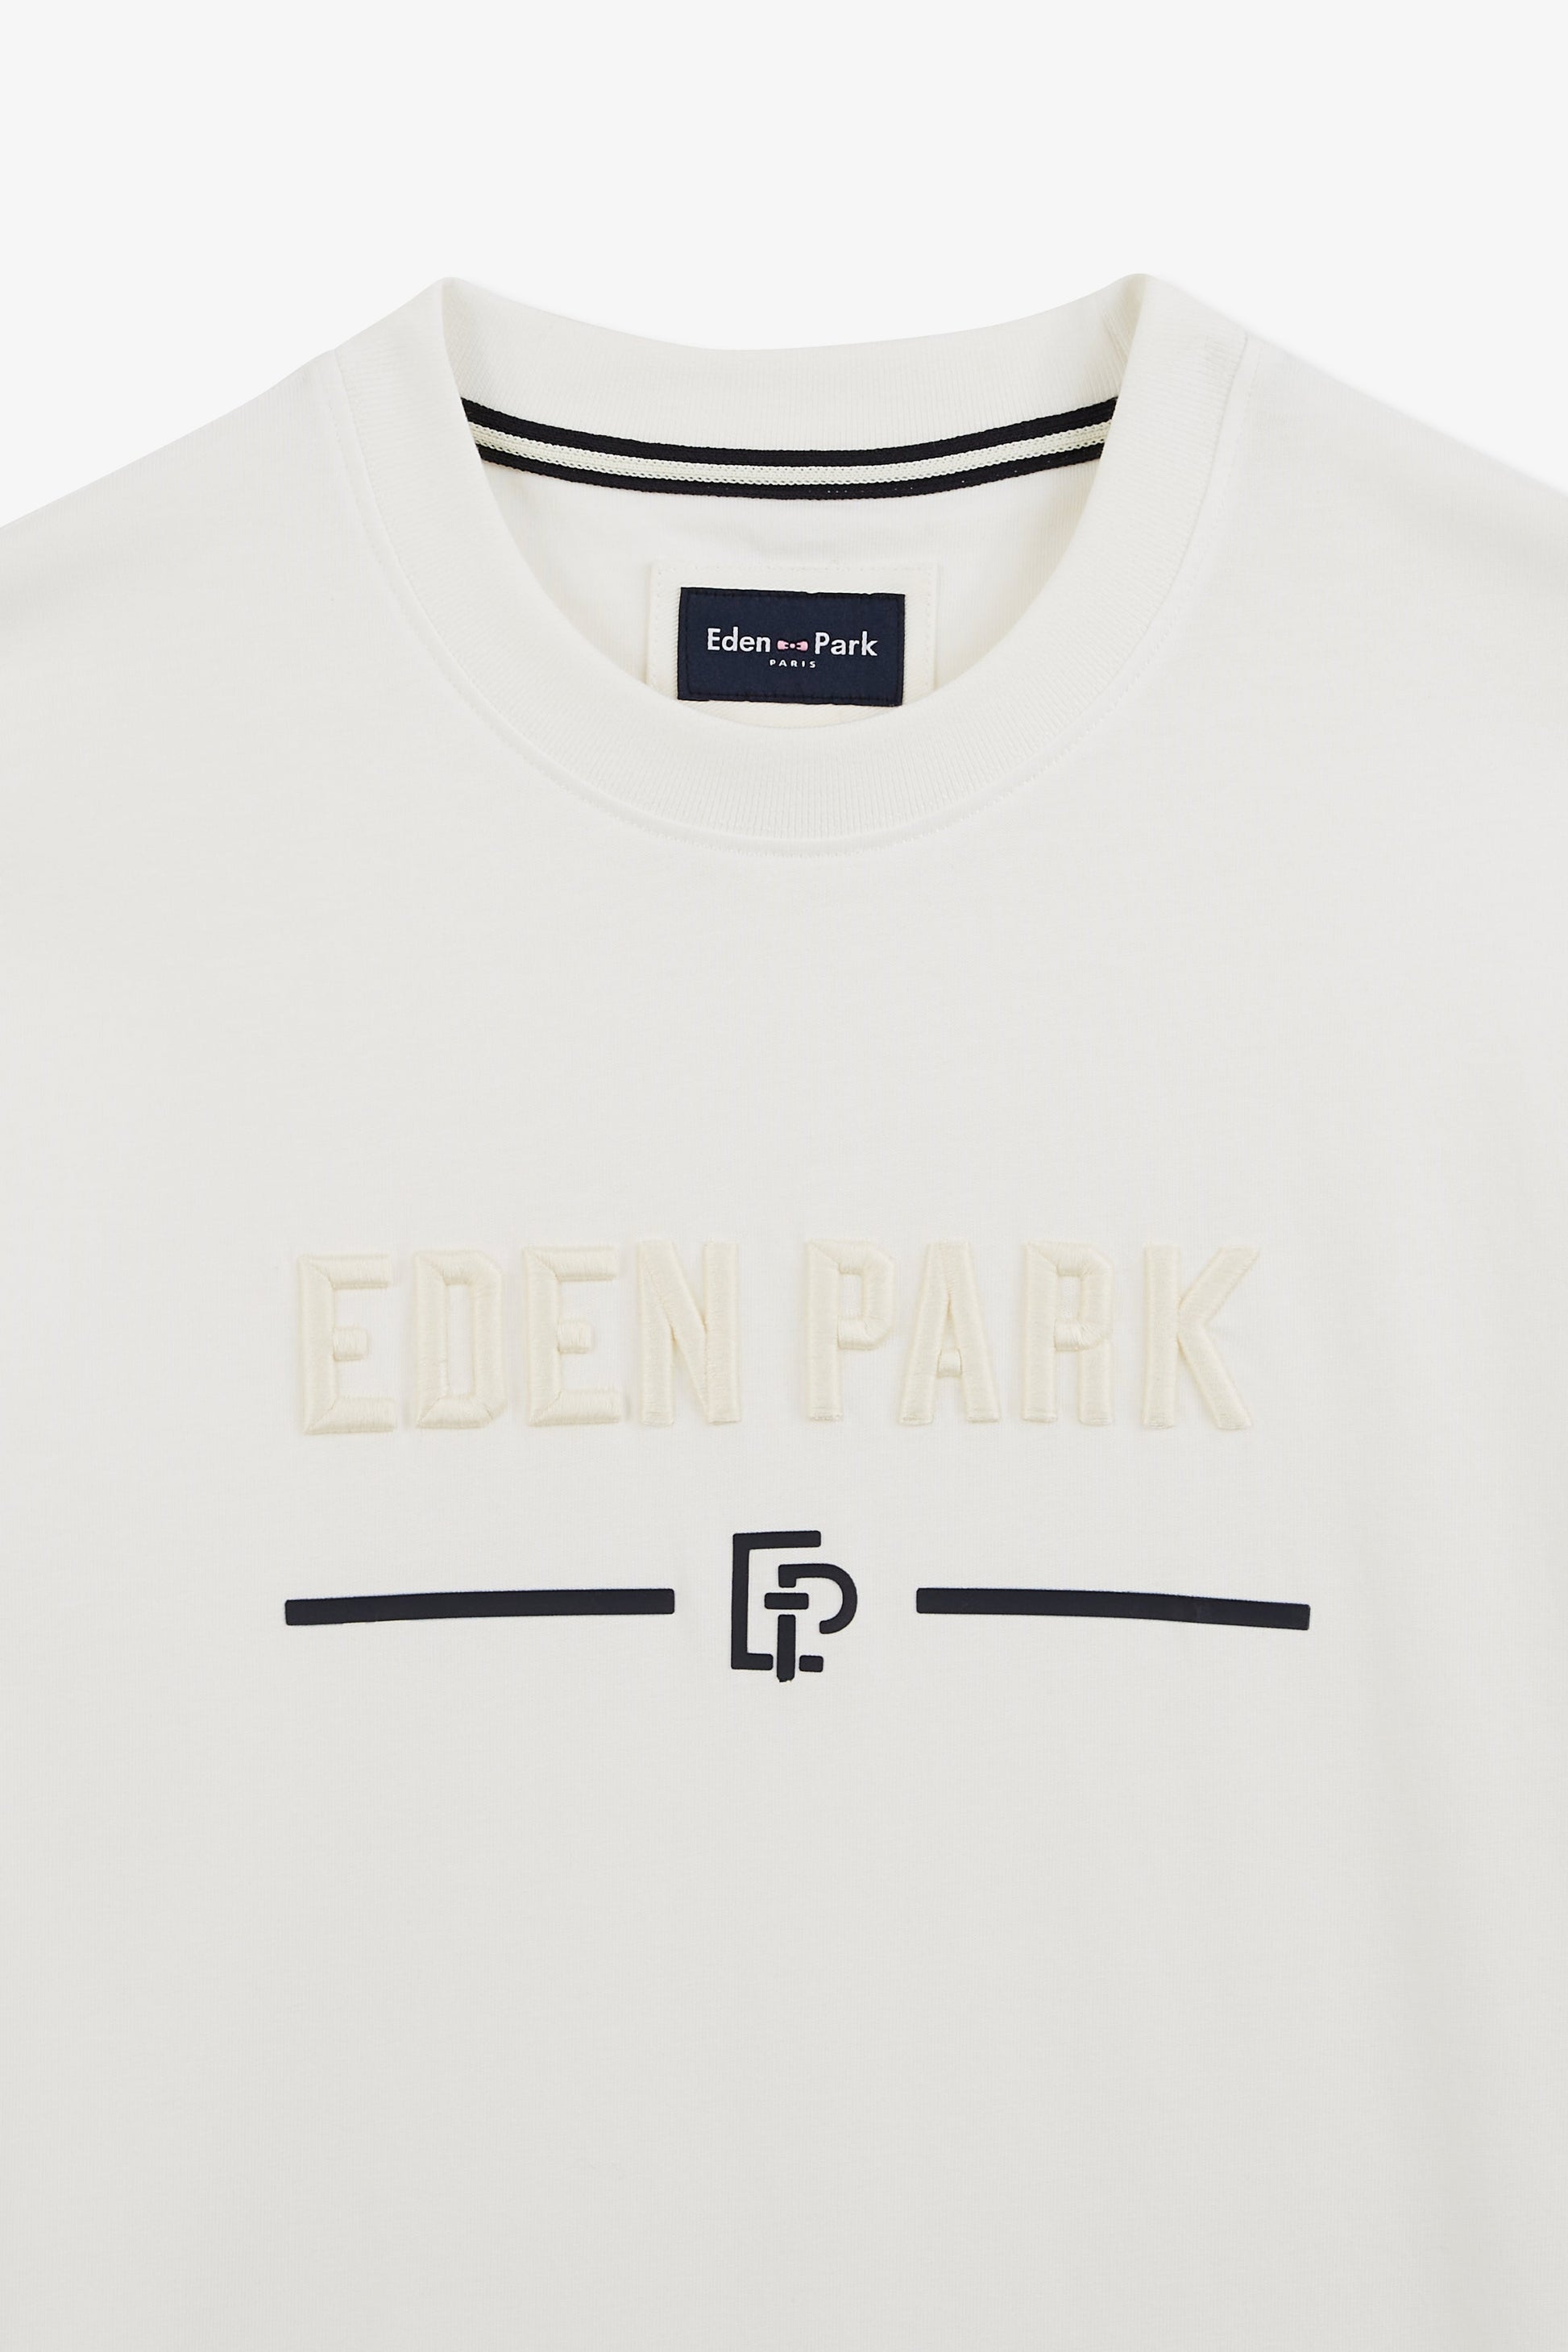 T-shirt écru à manches courtes brodé Eden Park